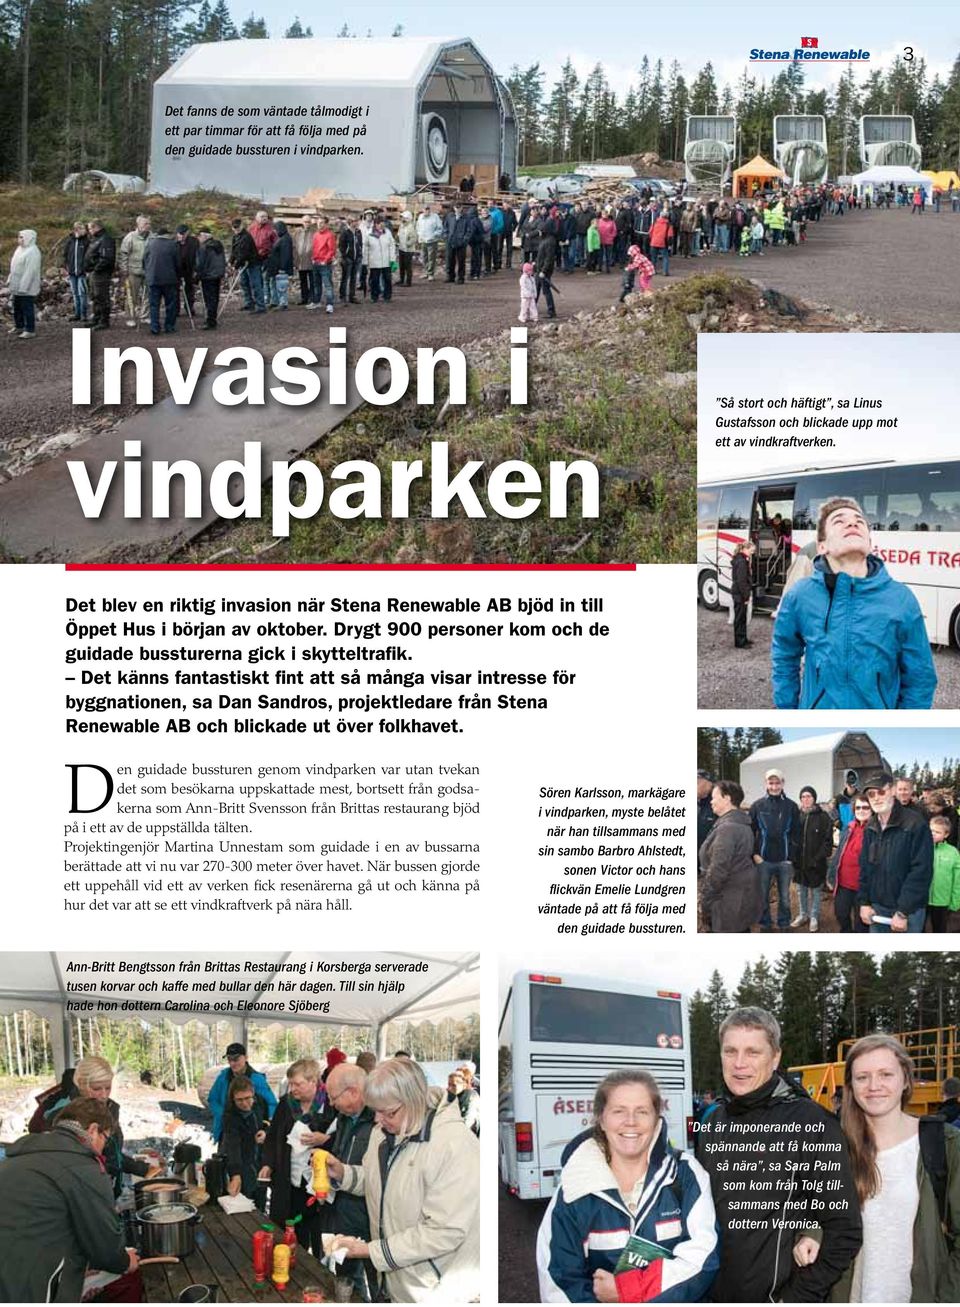 Det blev en riktig invasion när Stena Renewable AB bjöd in till Öppet Hus i början av oktober. Drygt 900 personer kom och de guidade bussturerna gick i skytteltrafik.